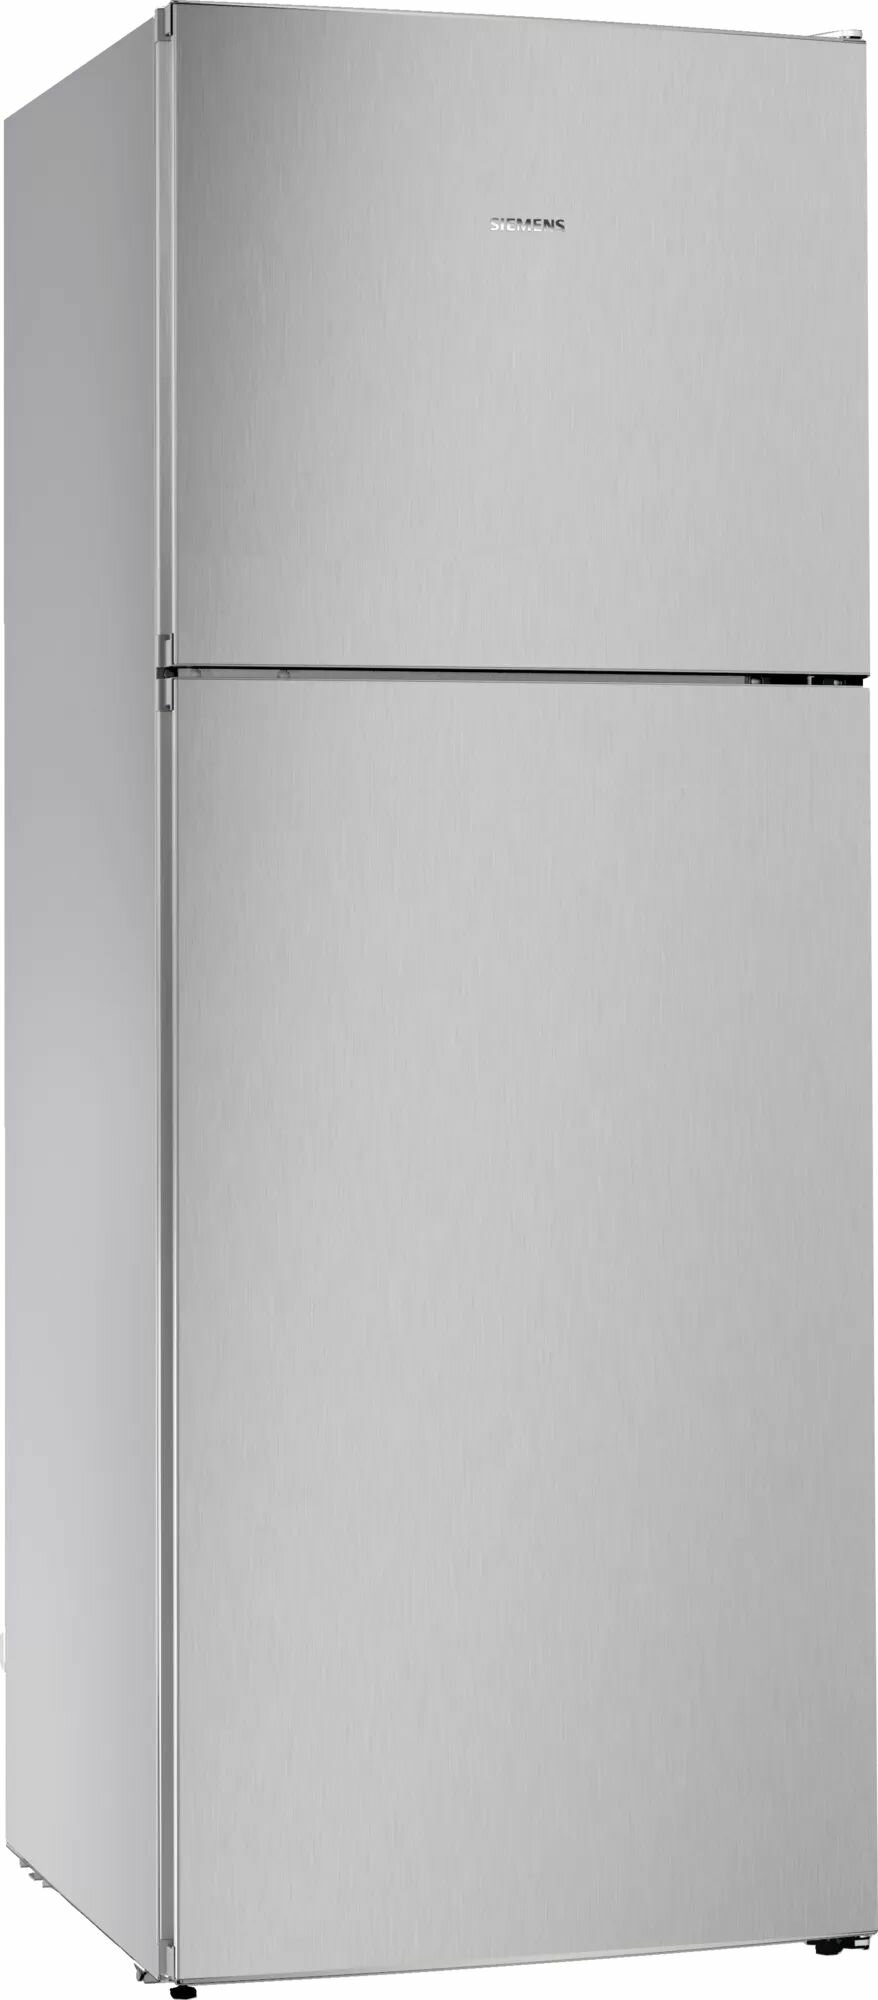 Отдельностоящий холодильник с морозильной камерой сверху SIEMENS KD55NNL20M iQ300 1860 x 700 x 745338/147 л 41 дБ зона свежести FreshSense